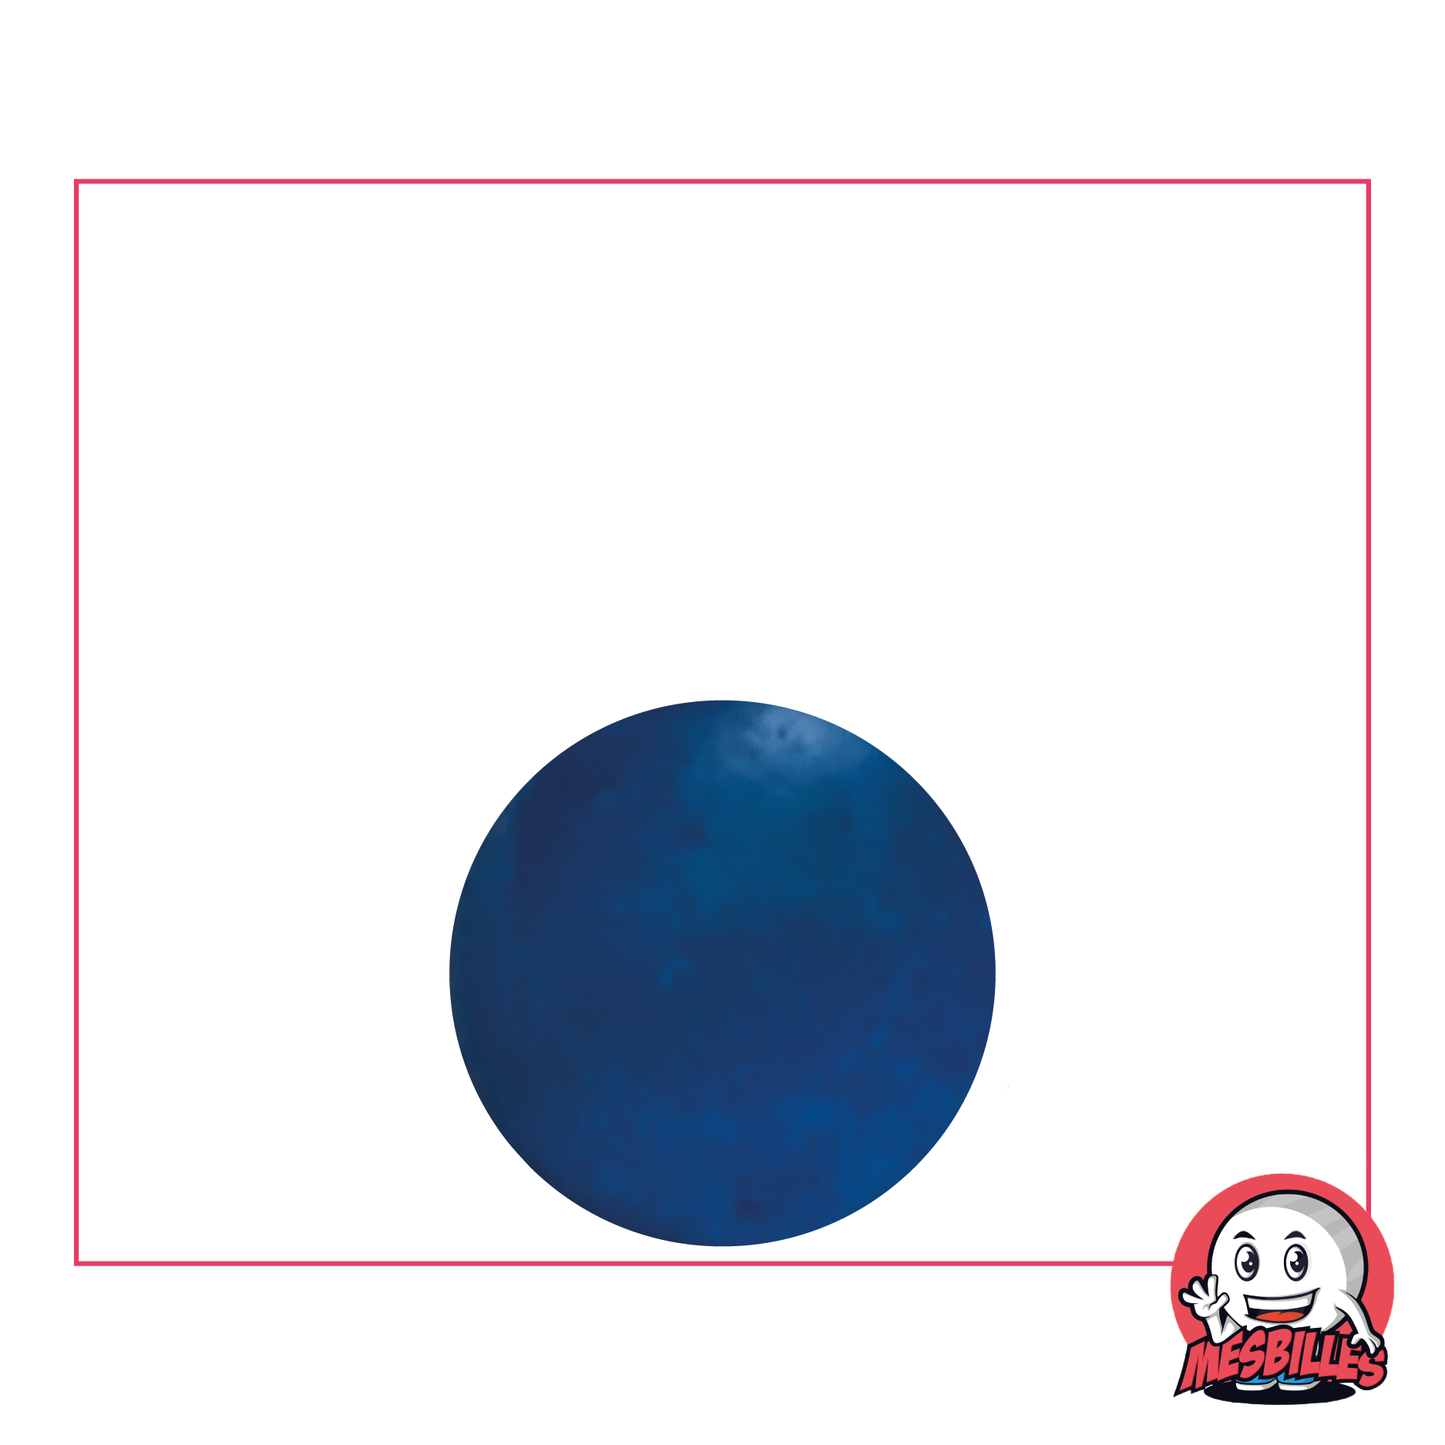 Bille Bleu Flou 16 mm en Verre | Une Douceur pour Sacs de BillesBille Bleu Foncé Flou 16 mm en Verre | Une Douceur pour Sacs de Billes